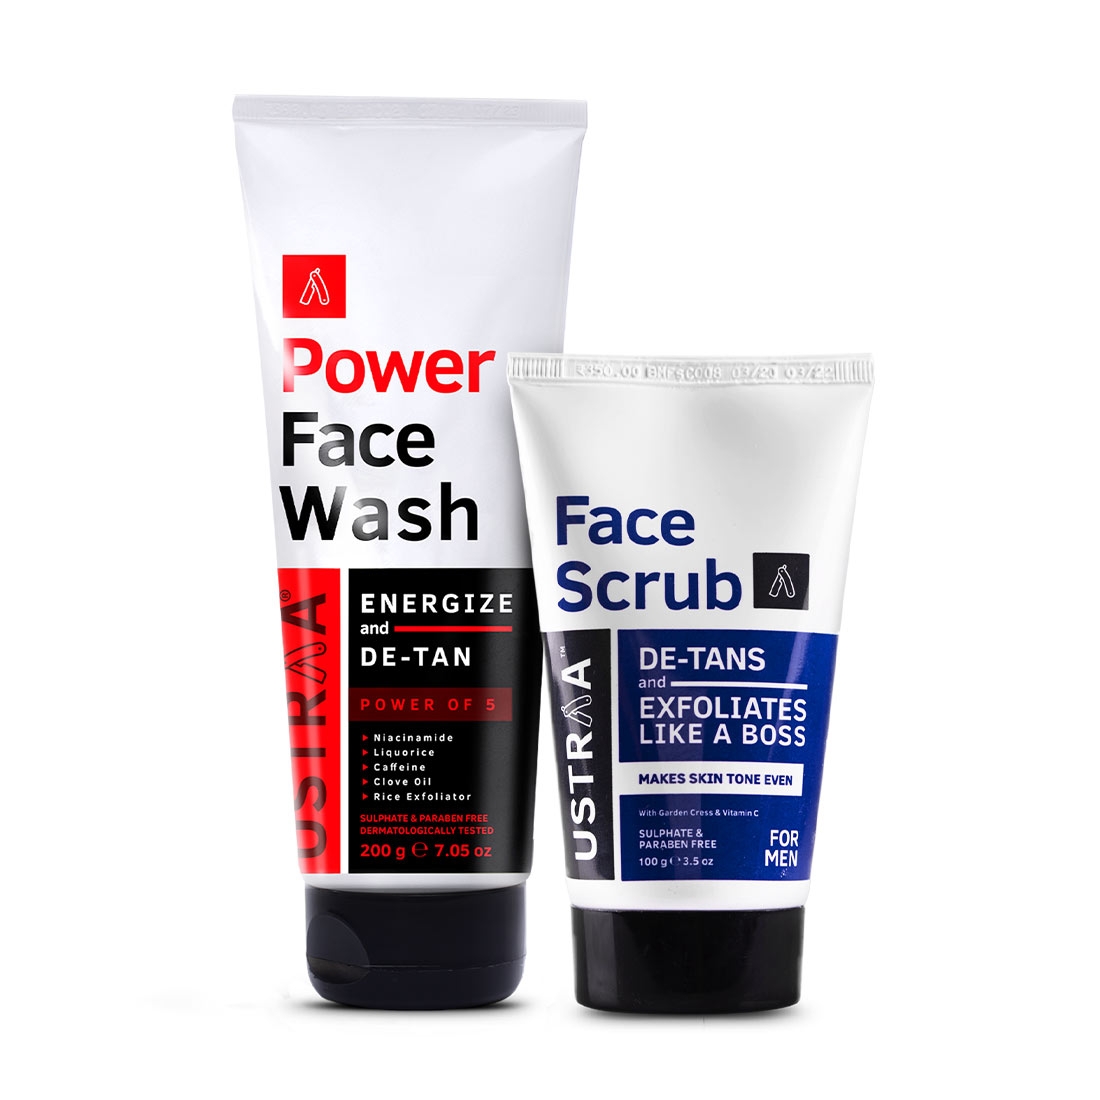 Ustraa Power Face Wash De-Tan - 200g & De Tan Face Scrub - 100g